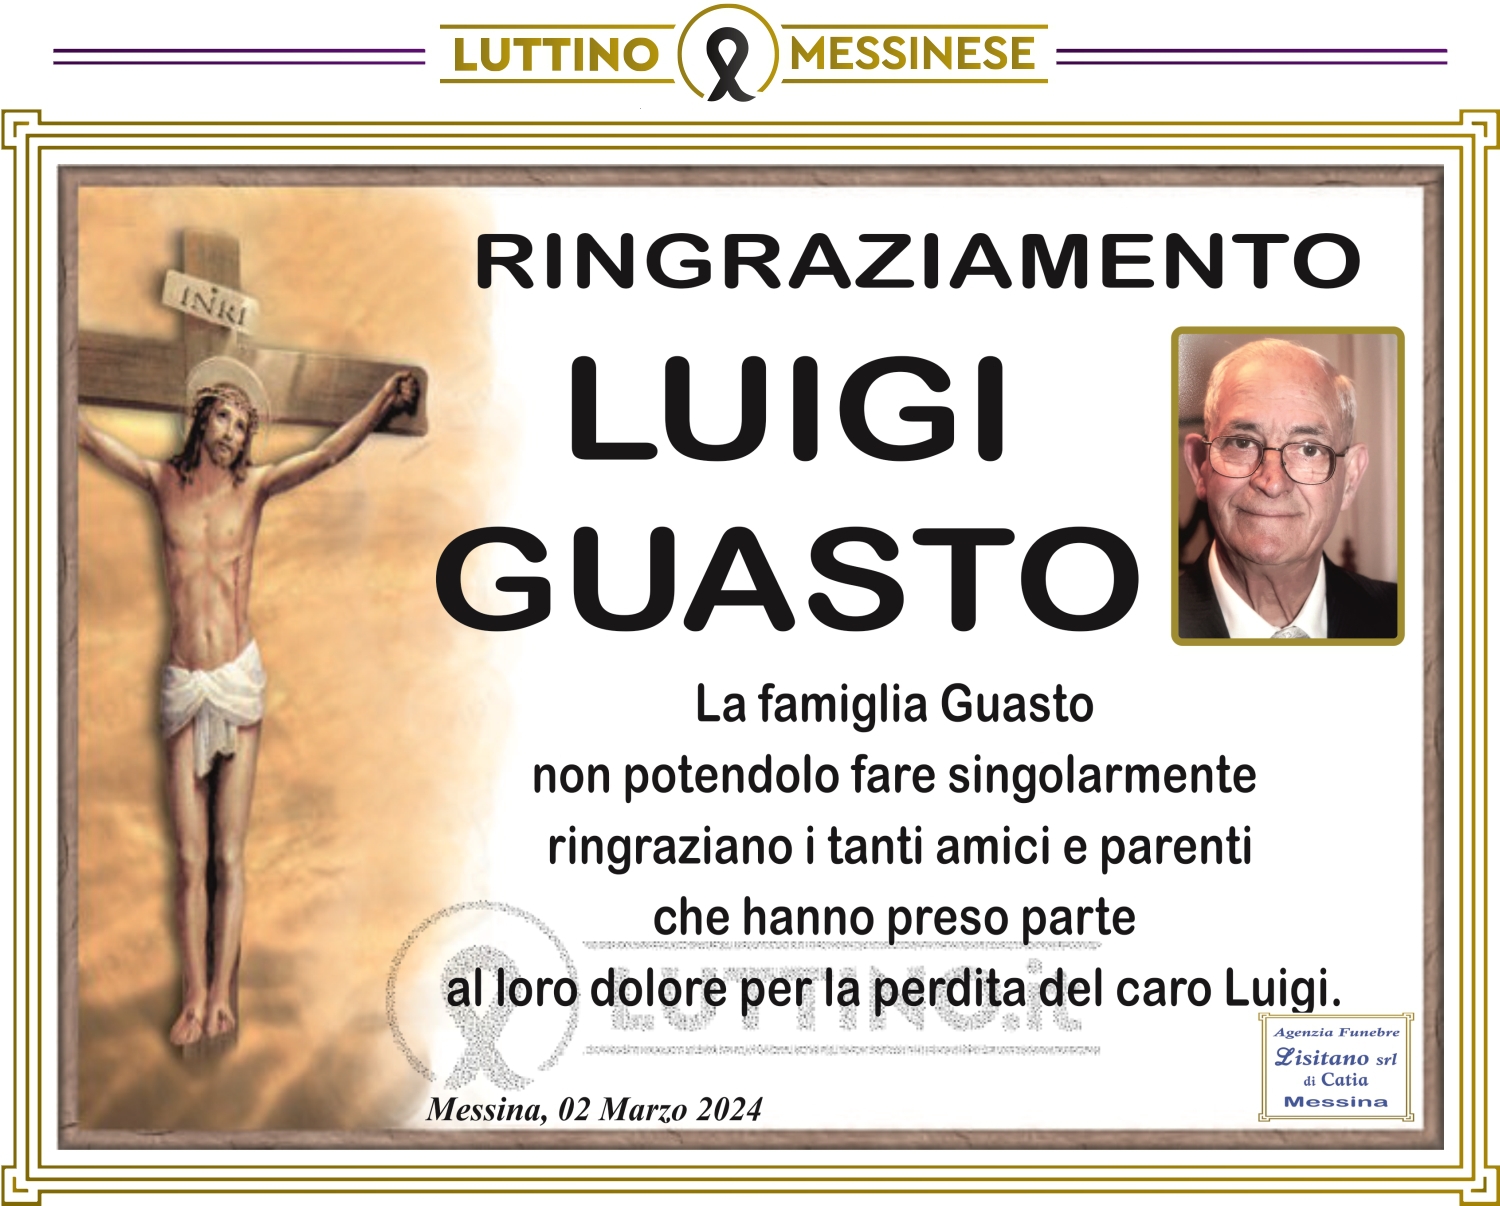 Luigi Guasto